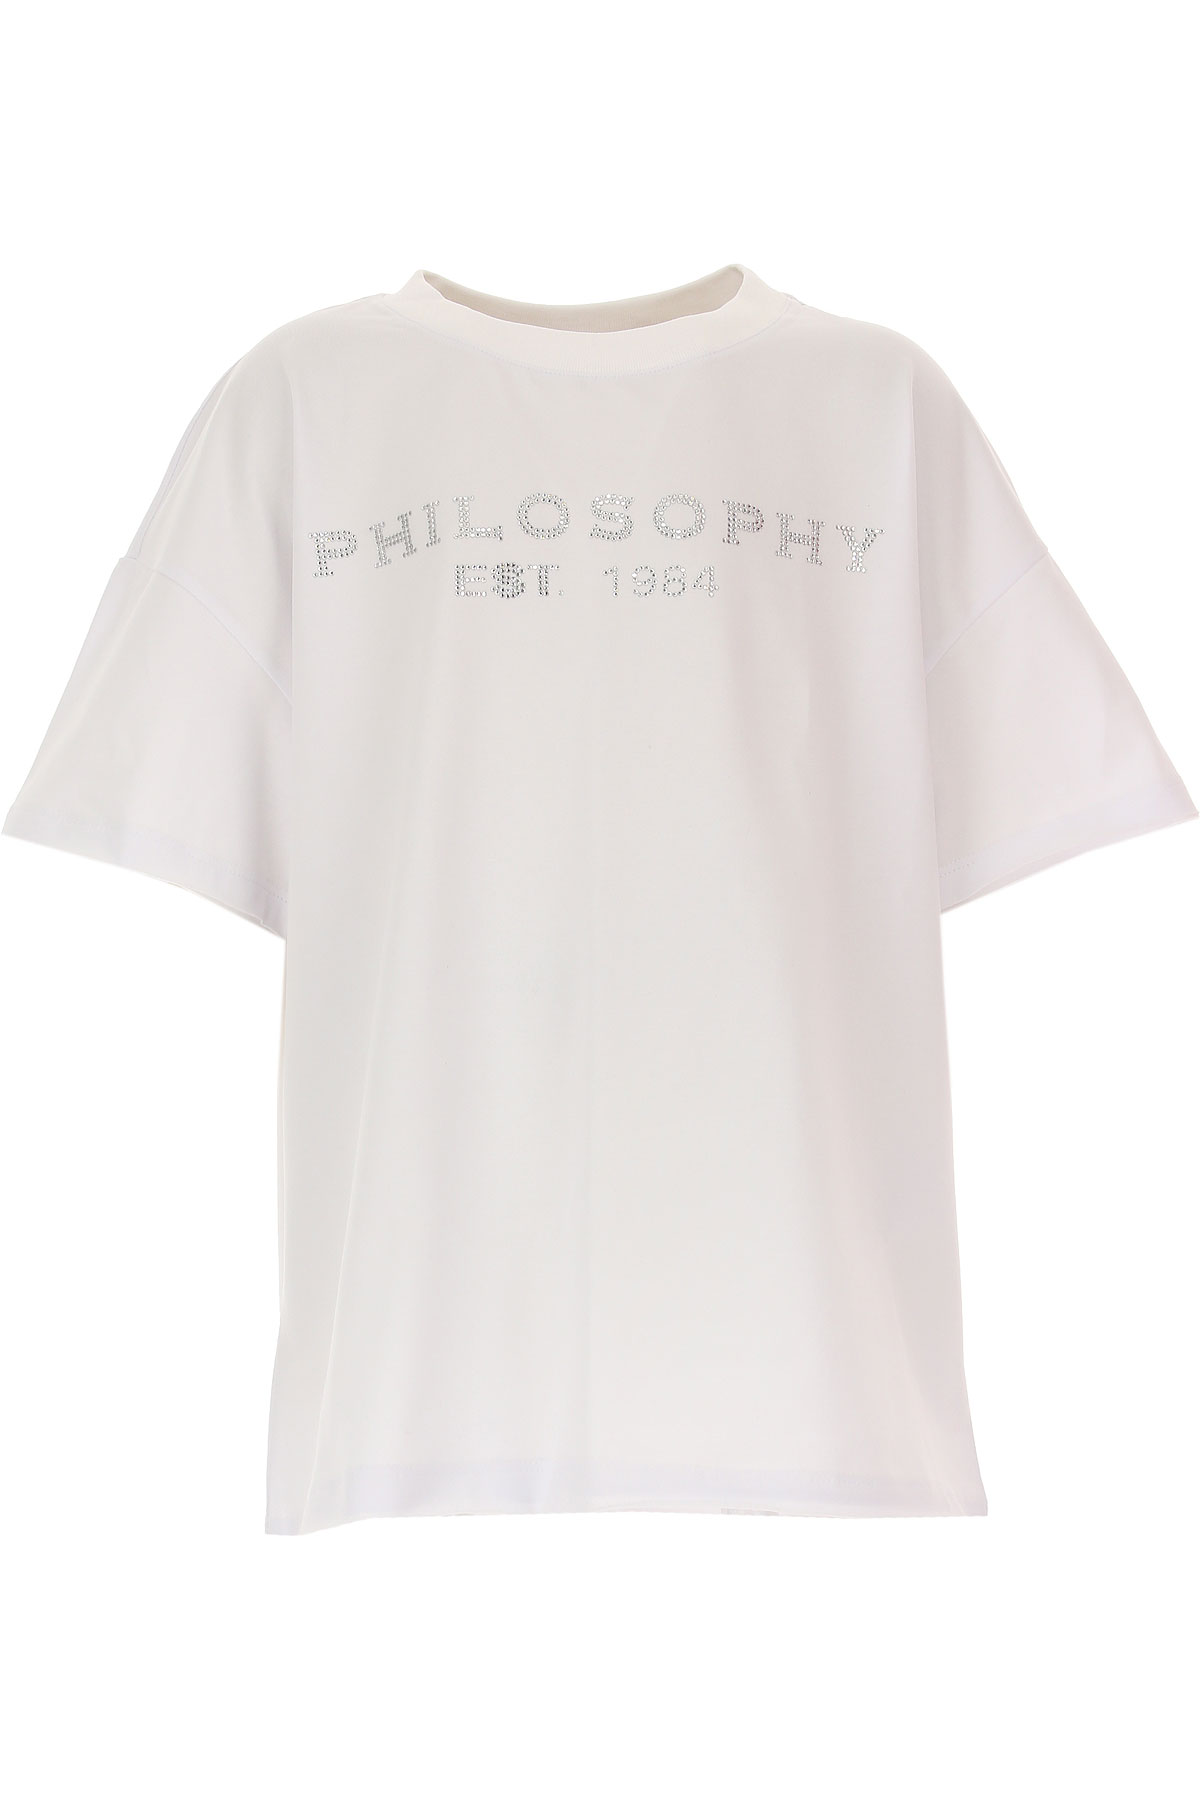 Philosophy di Lorenzo serafini Kinder T-Shirt für Mädchen Günstig im Sale, Weiss, Baumwolle, 2017, 10Y 8Y L M S XL XS XXS